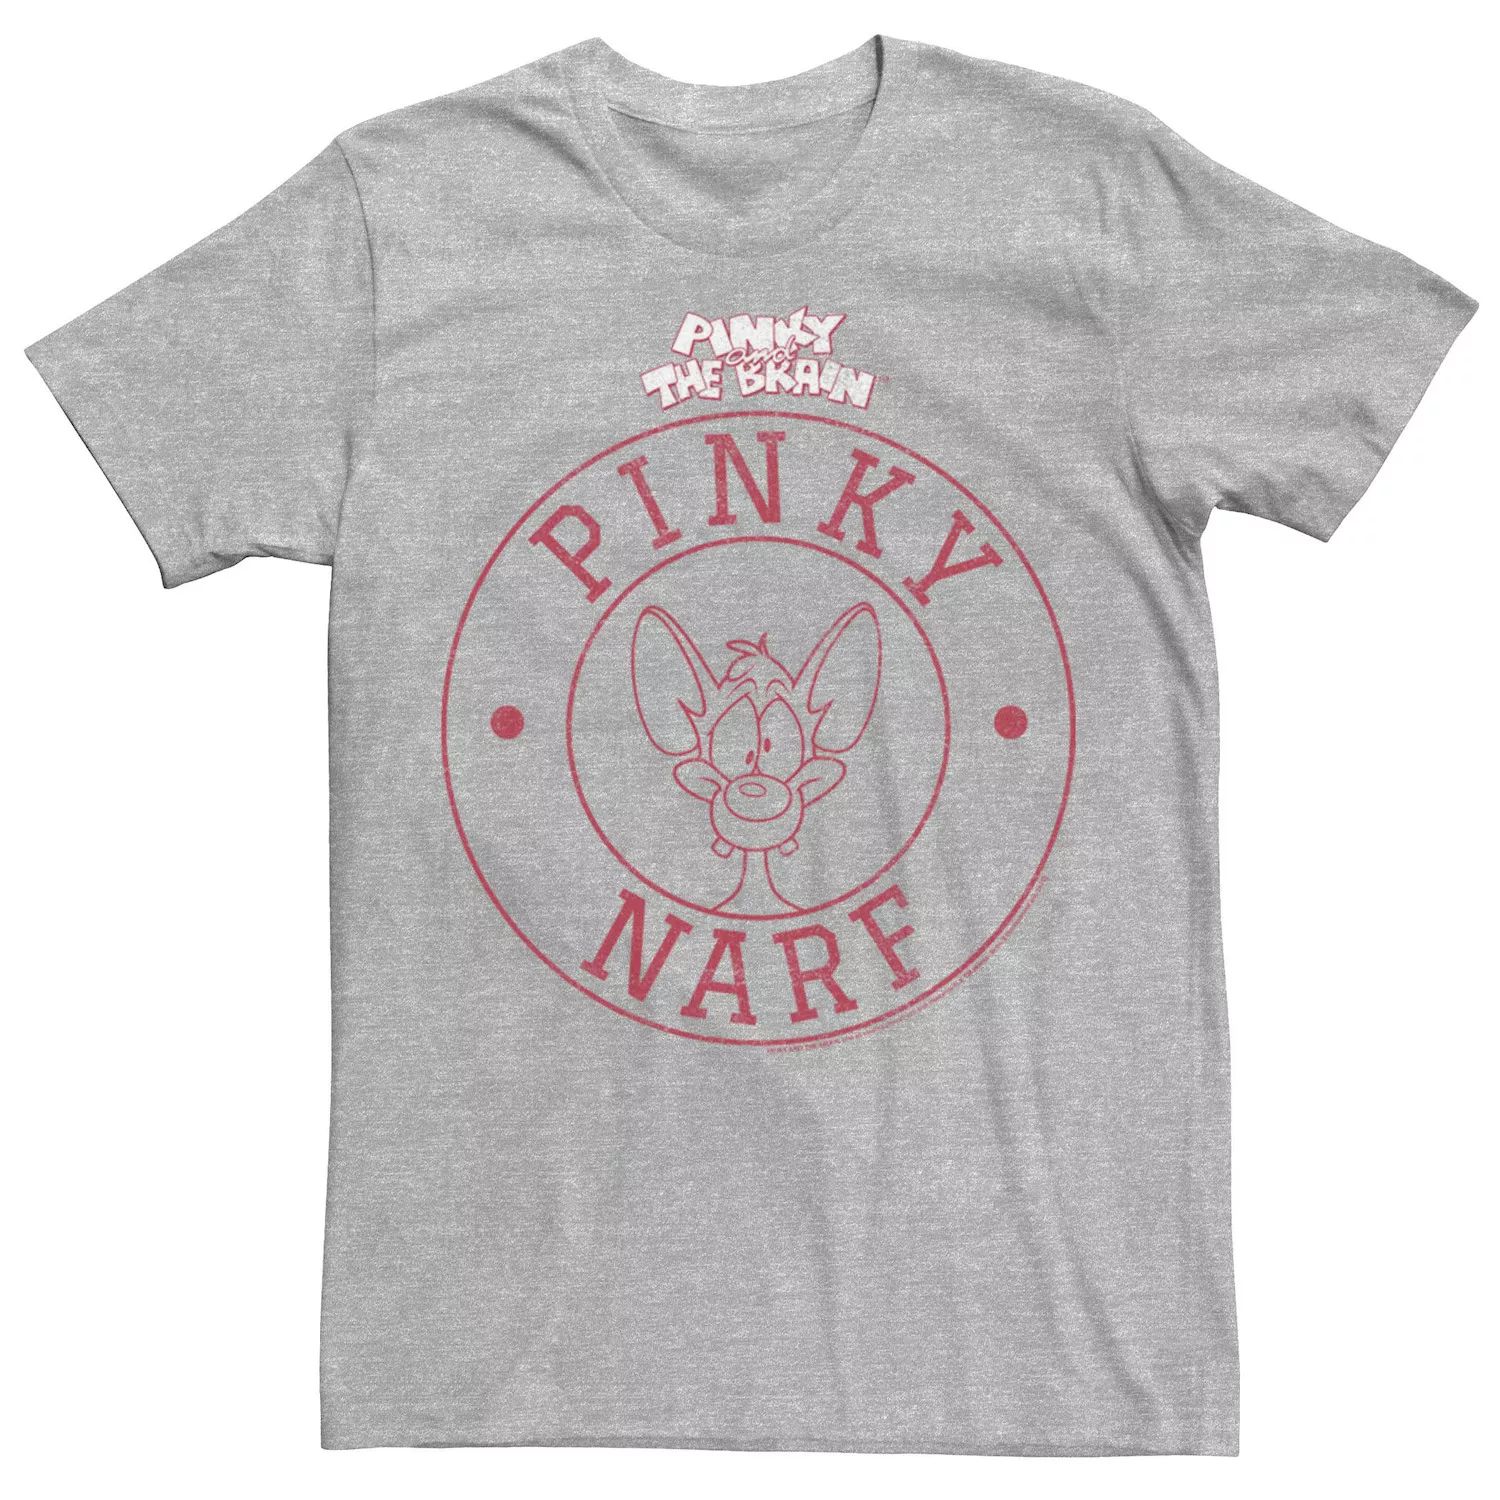 Мужская футболка с логотипом Pinky And The Brain Pinky Narf Licensed Character